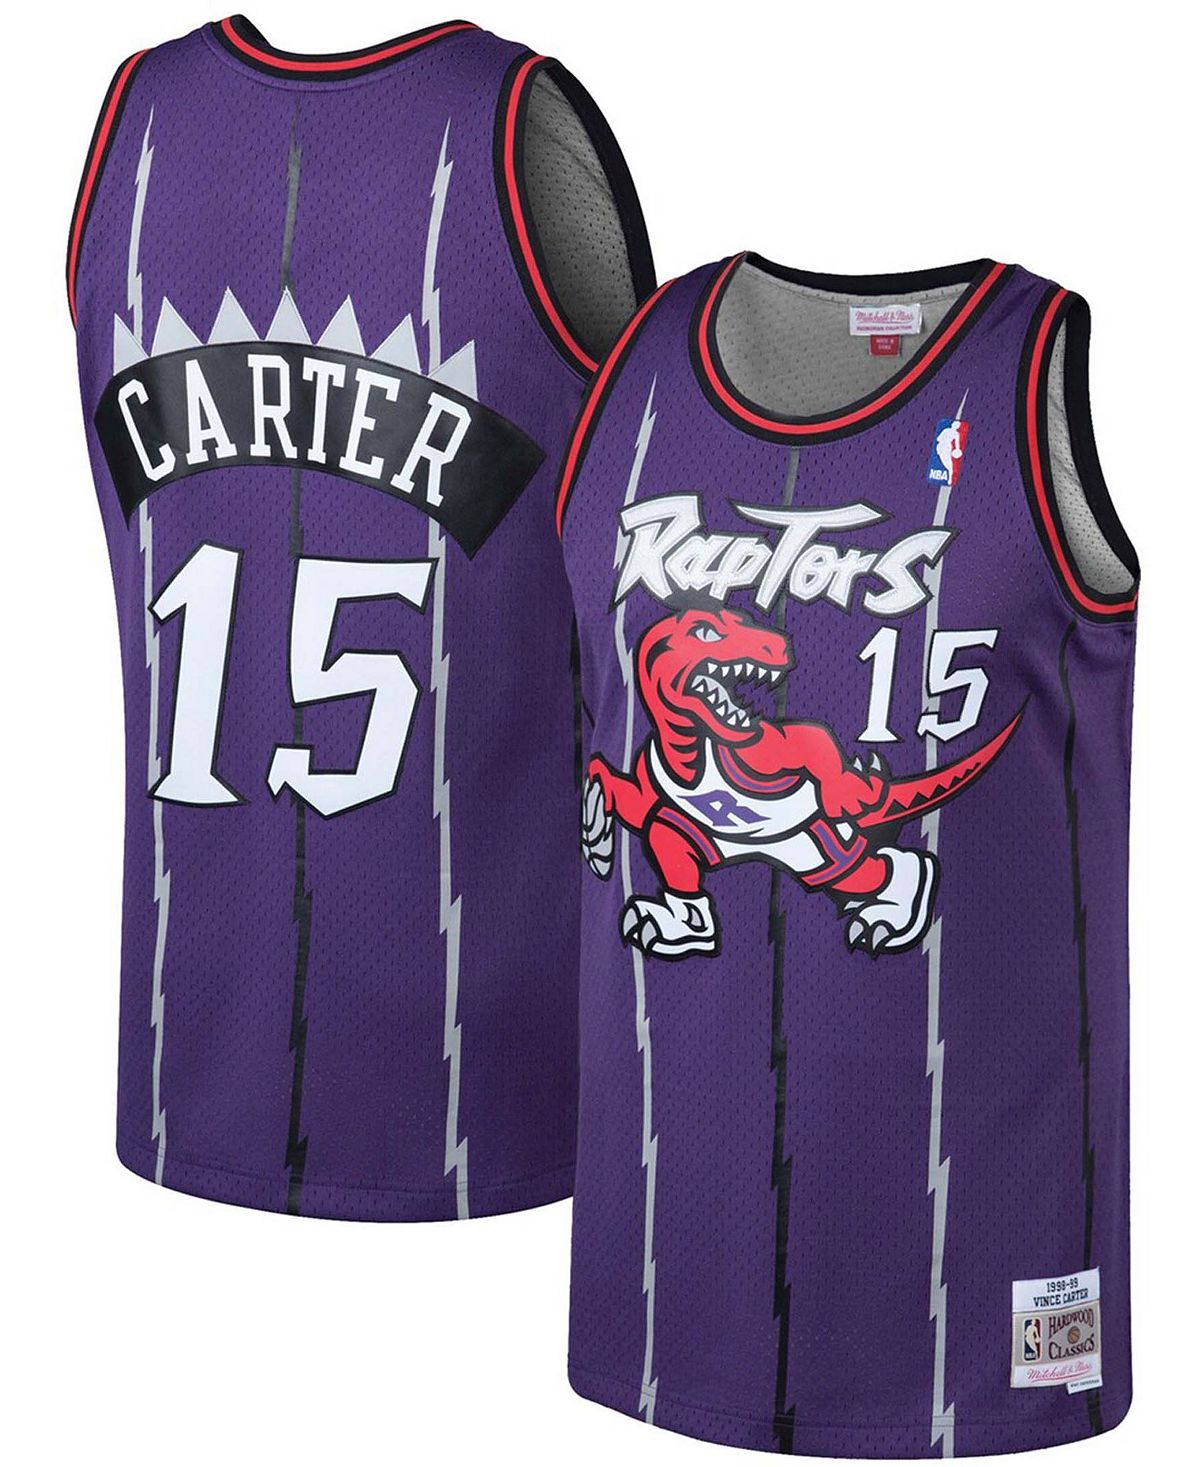 Мужская джерси vince carter purple toronto raptors 1998-99 hardwood classics swingman Mitchell & Ness, фиолетовый